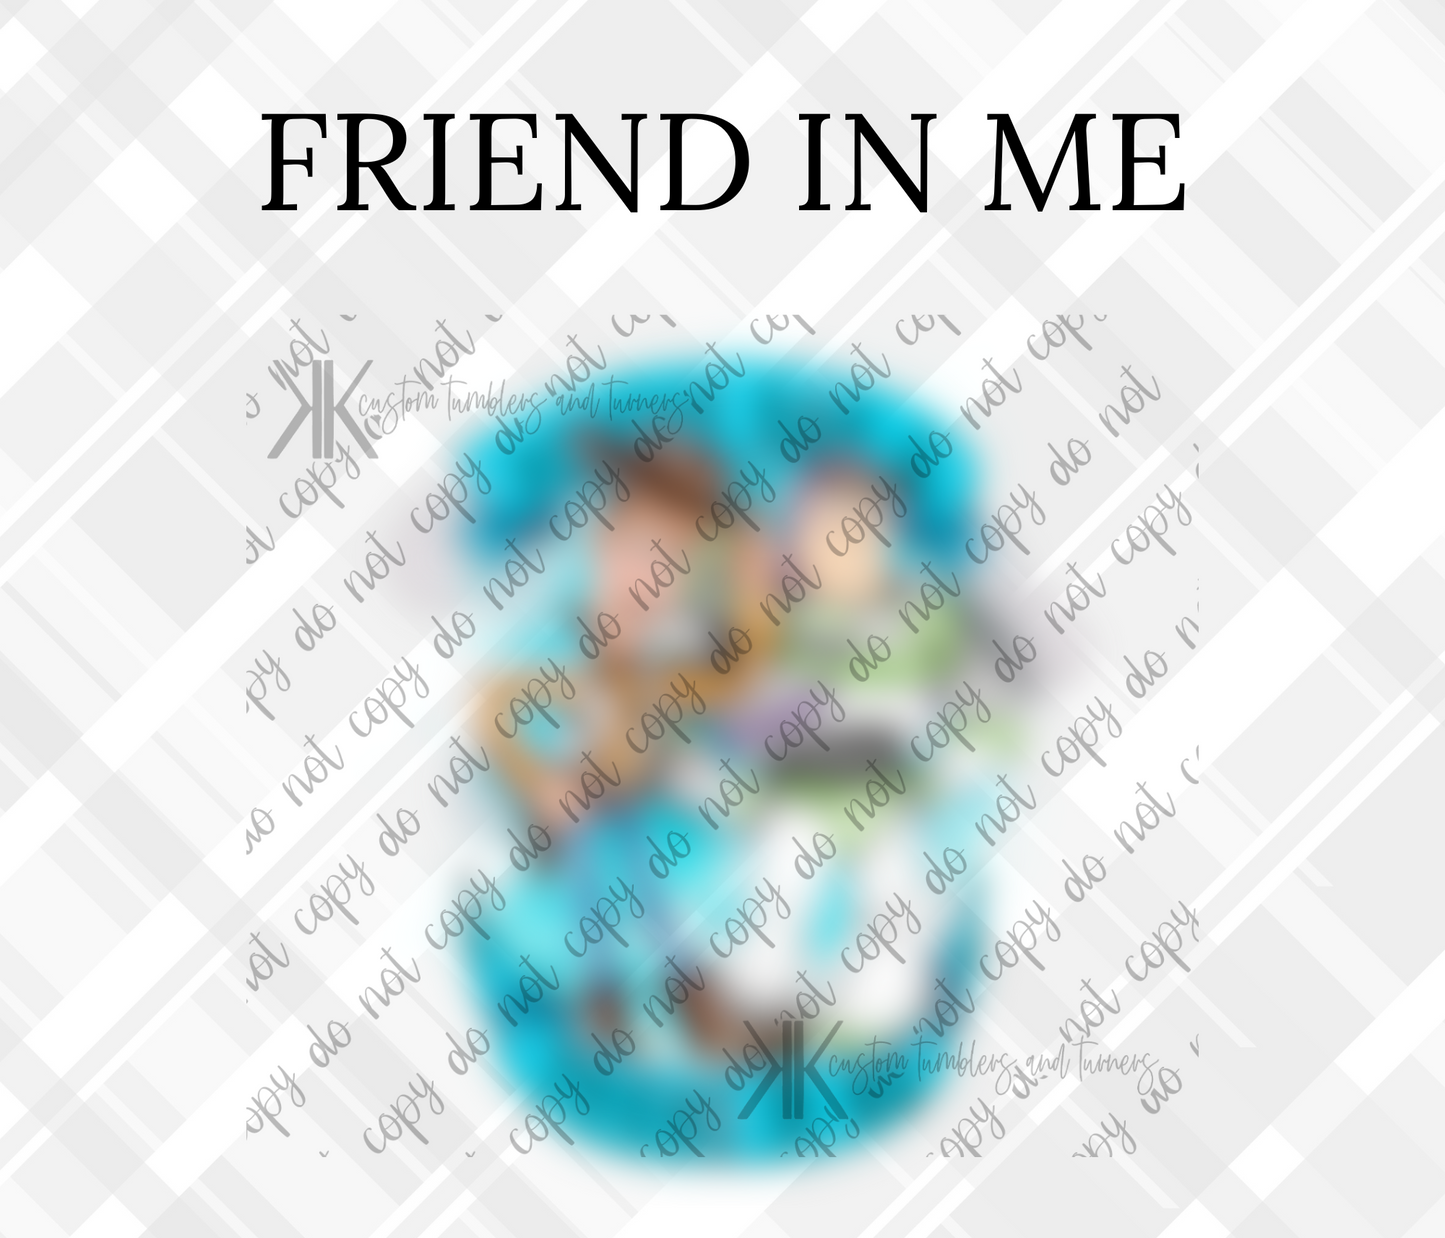 FRIEND IN ME